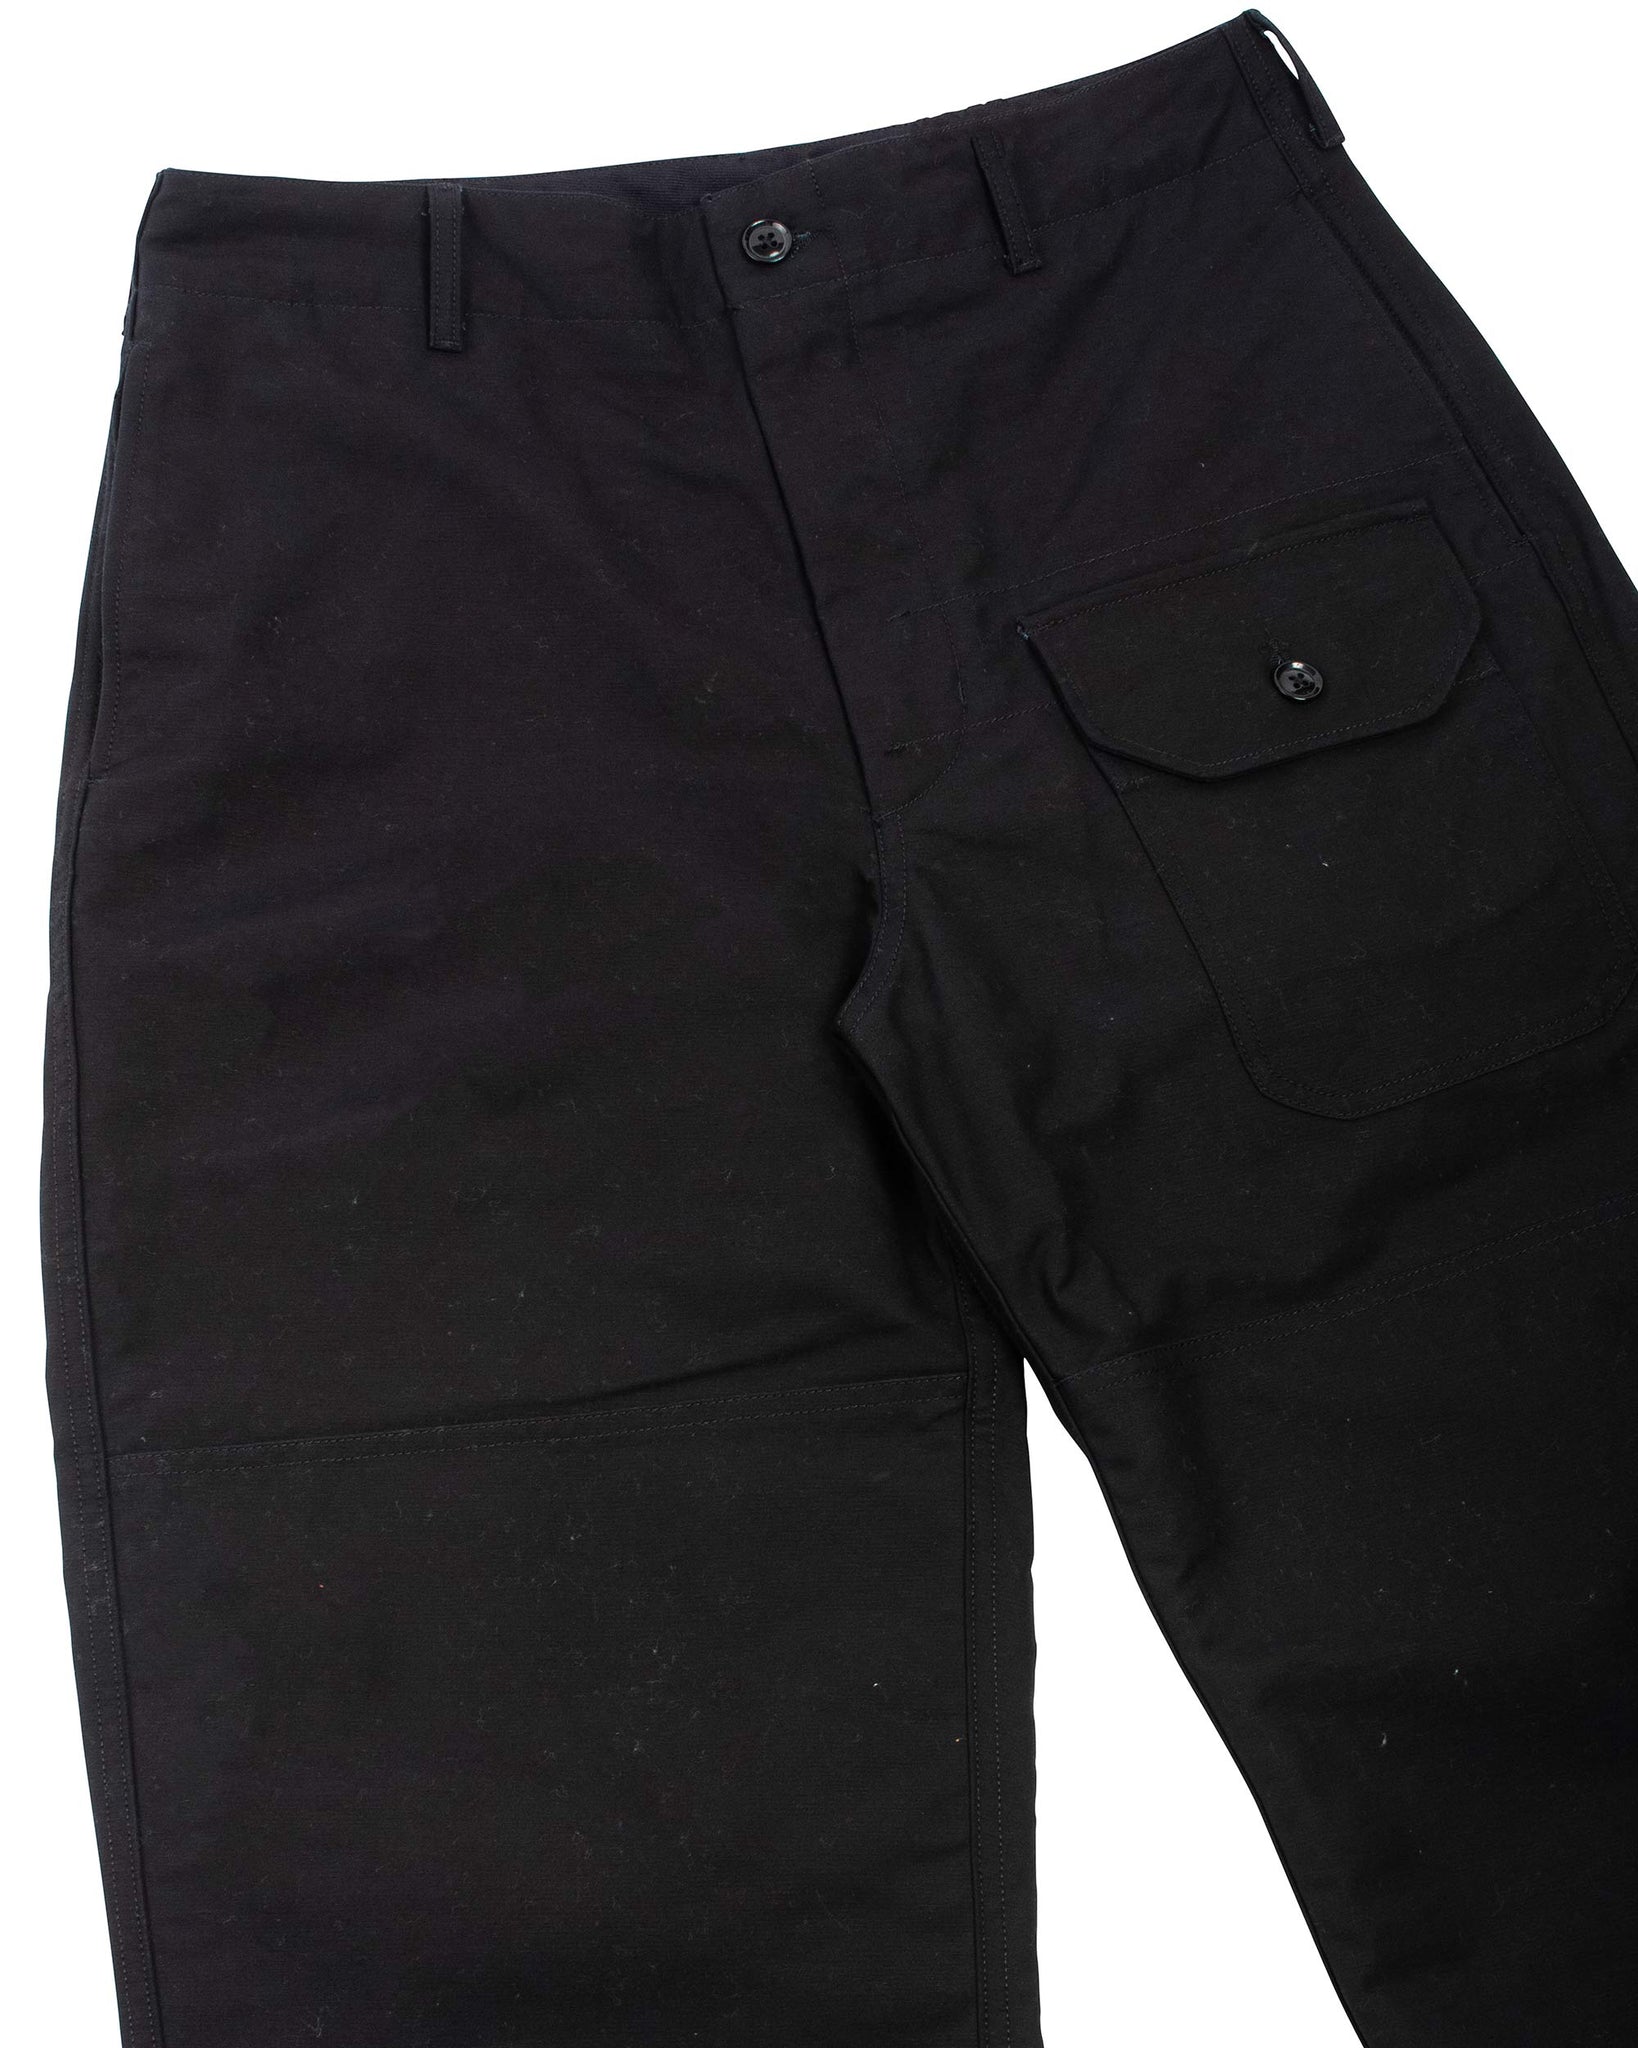 Engineered Garments Deck Pant Black Cotton Double Cloth Details